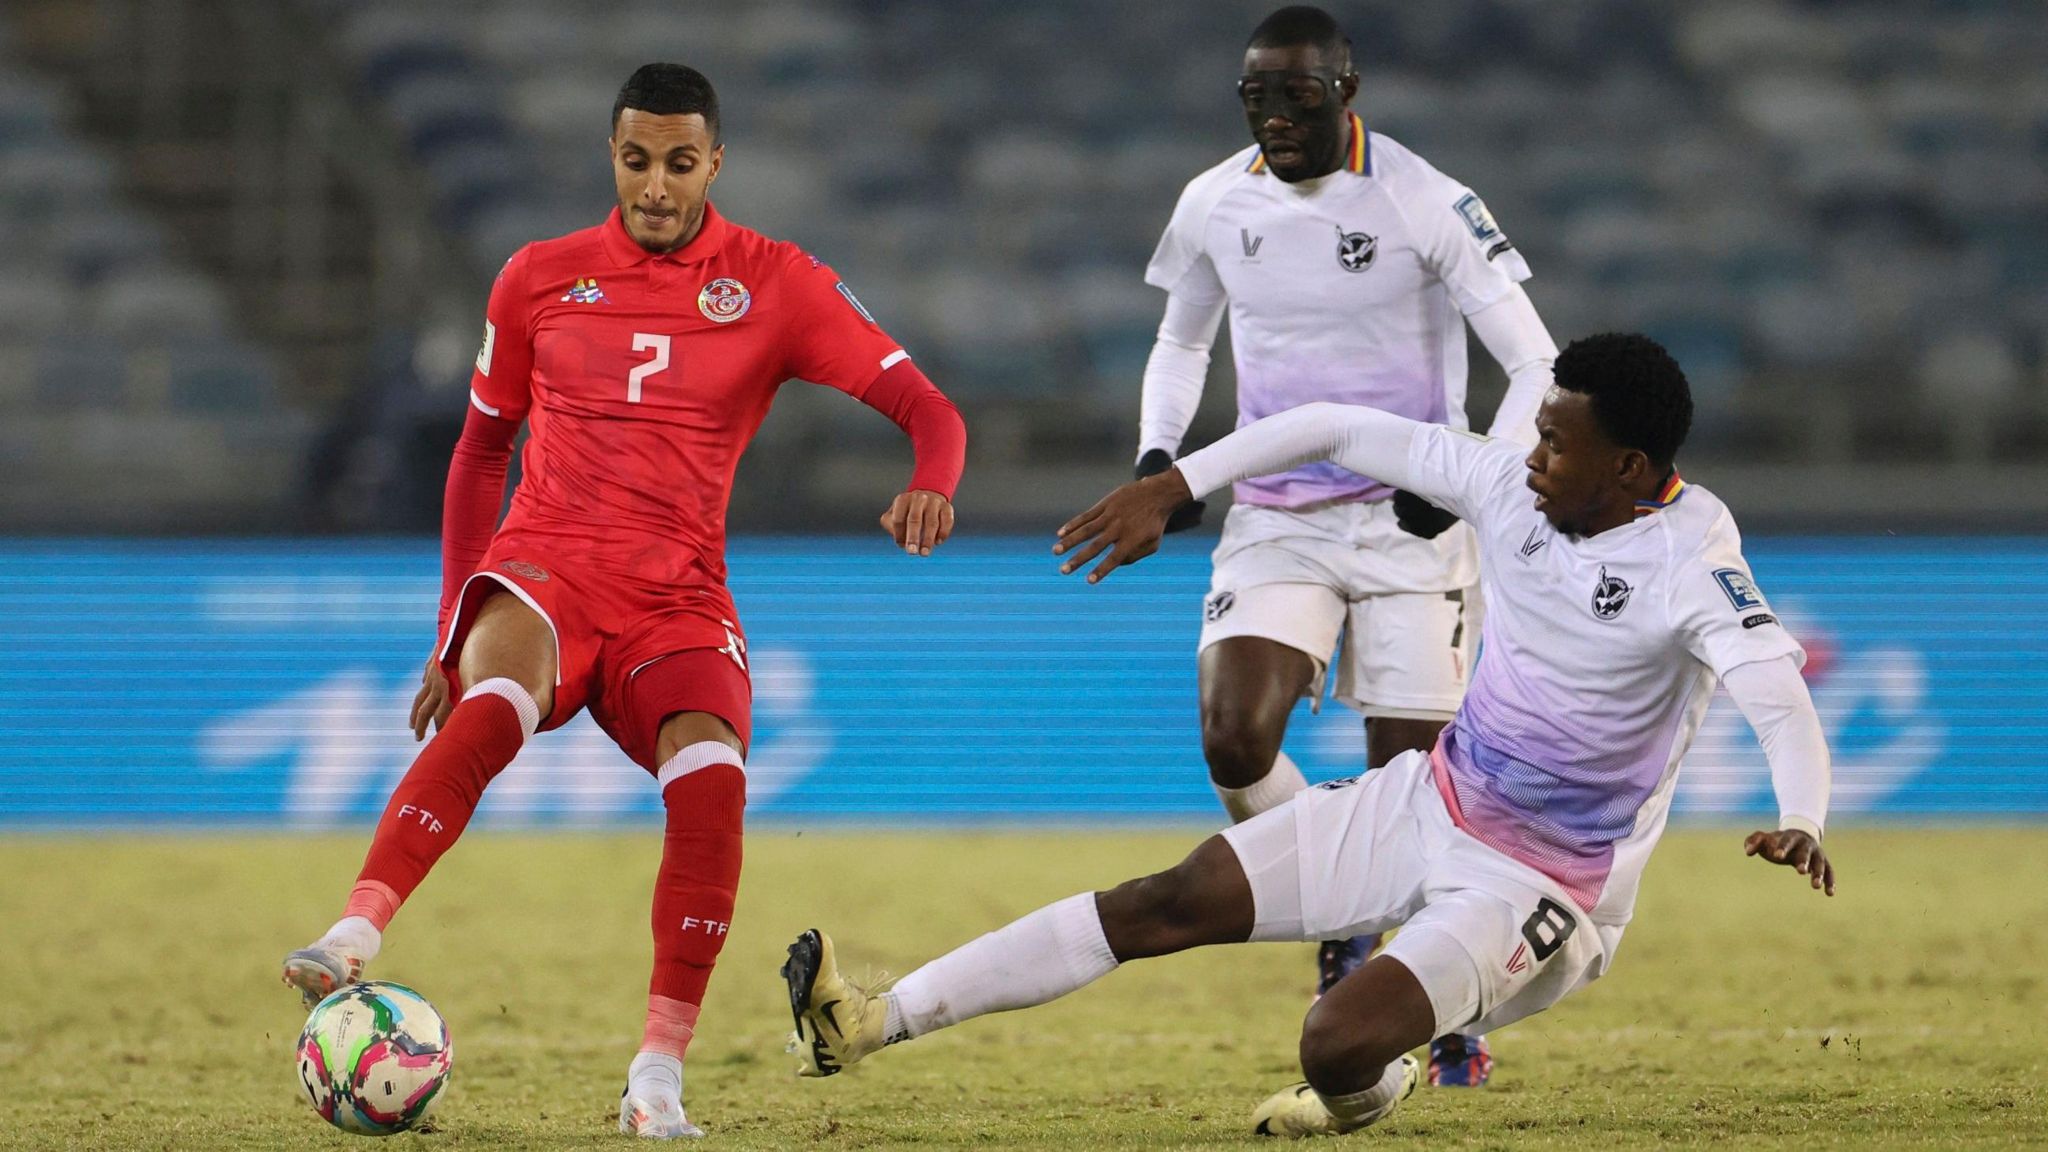 Namibia's Romeo Kasume tackles Tunisia's Elias Achouri as Namibia's Deon Hotto looks on